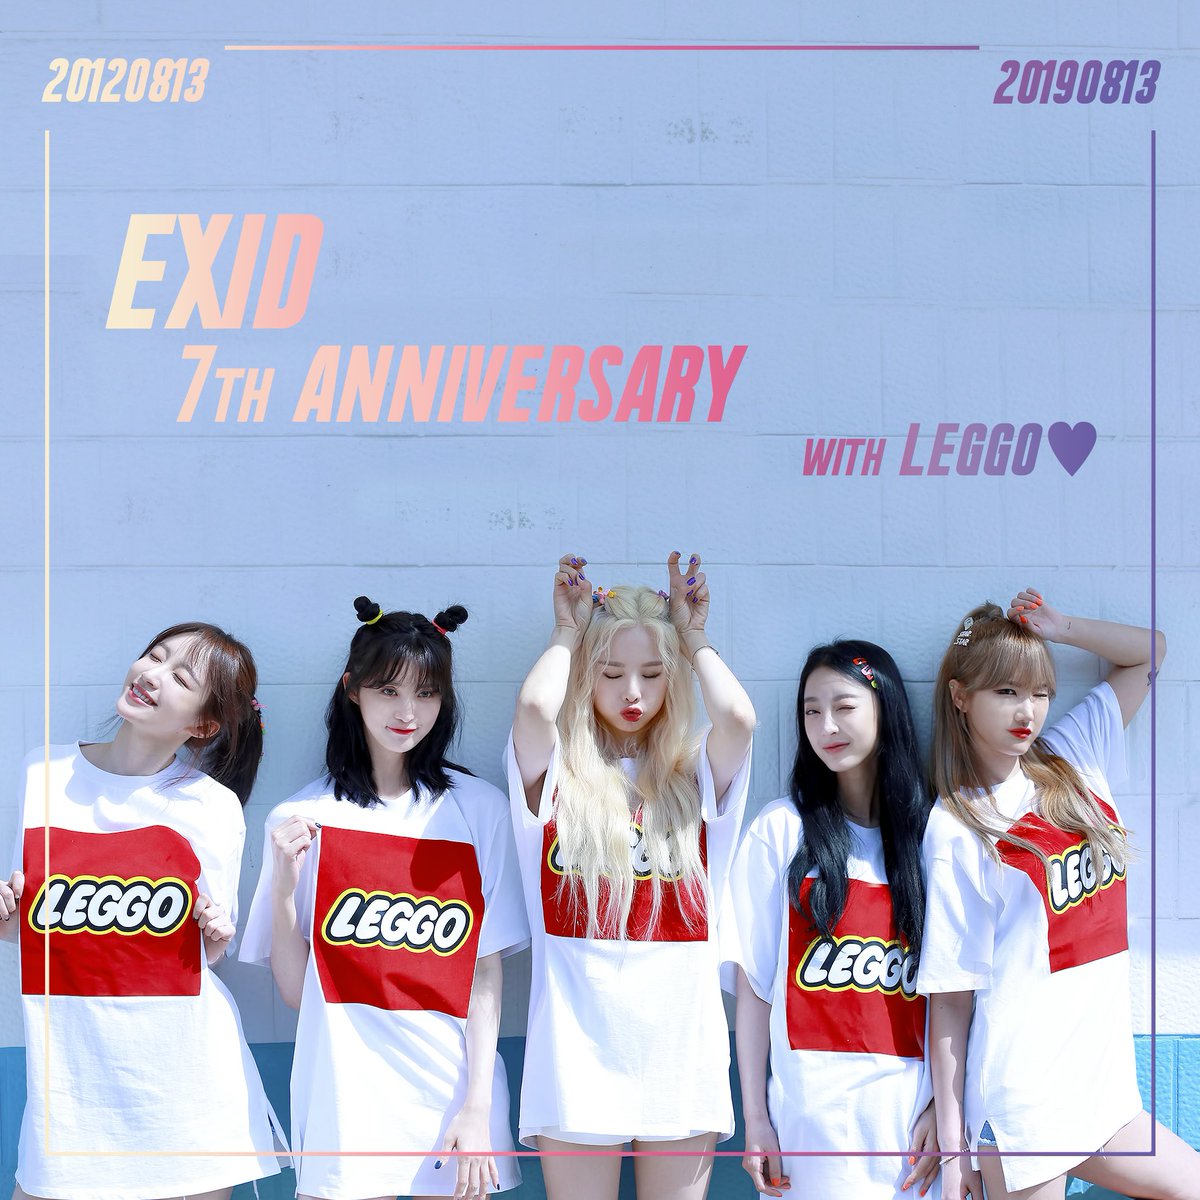 [#EXID] EXID 7주년을 축하합니다. LEGGO들 고마워요❤️

#솔지 #LE #하니 #혜린 #정화